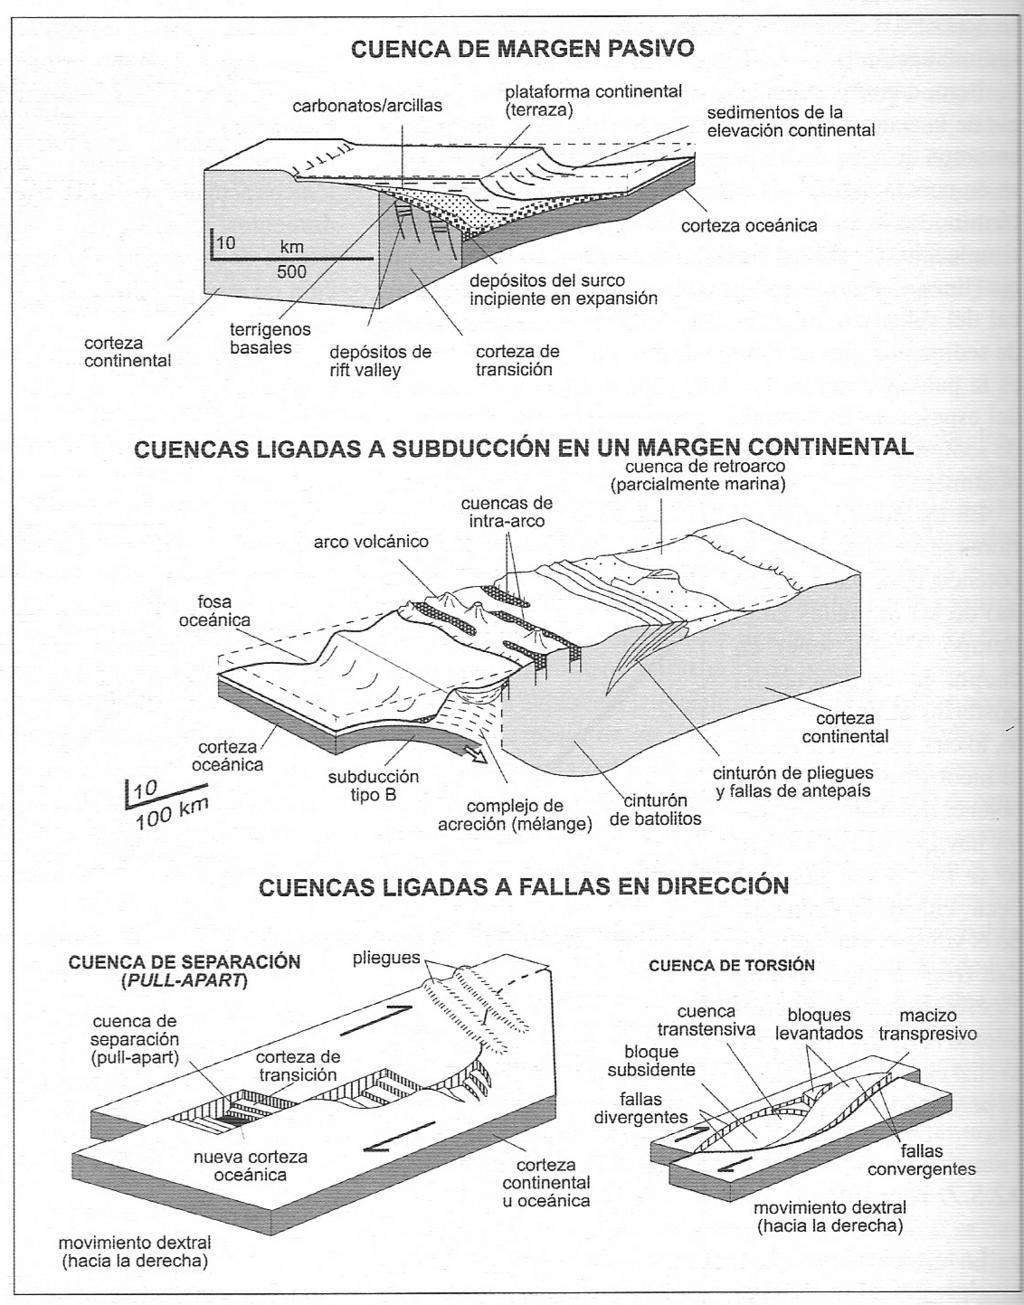 Marco conceptual de cuencas sedimentarias según la tectónica de placas.